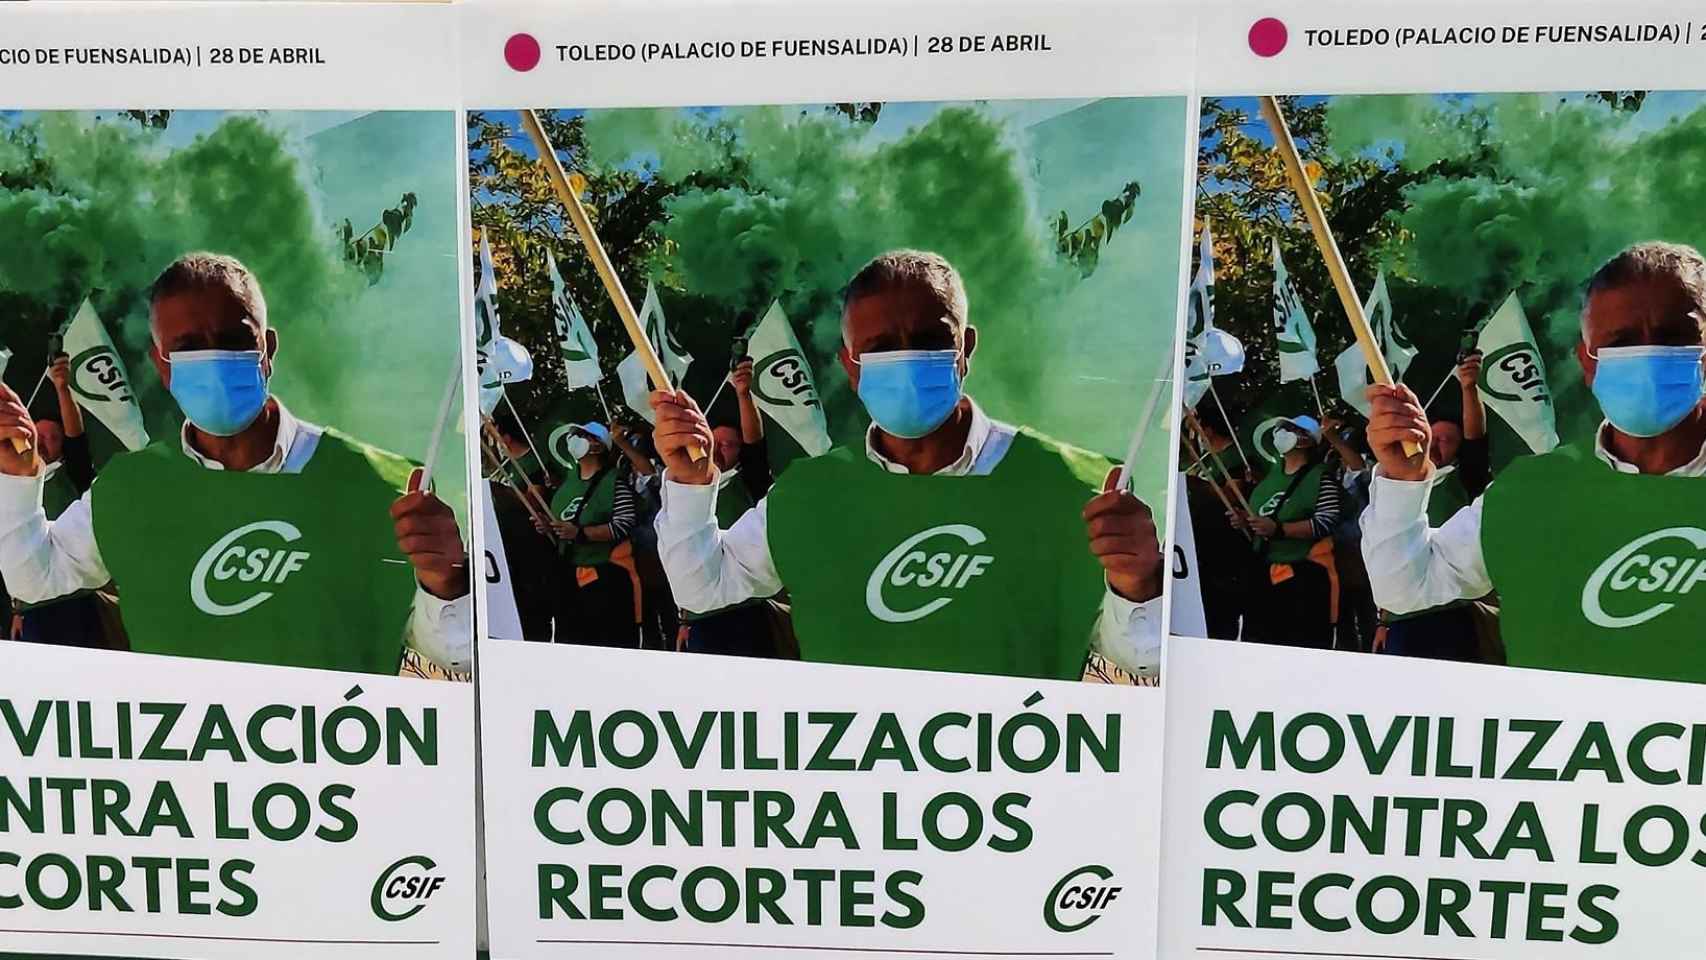 Movilización convocada por el CSIF en el Palacio de Fuensalida el 28 de abril